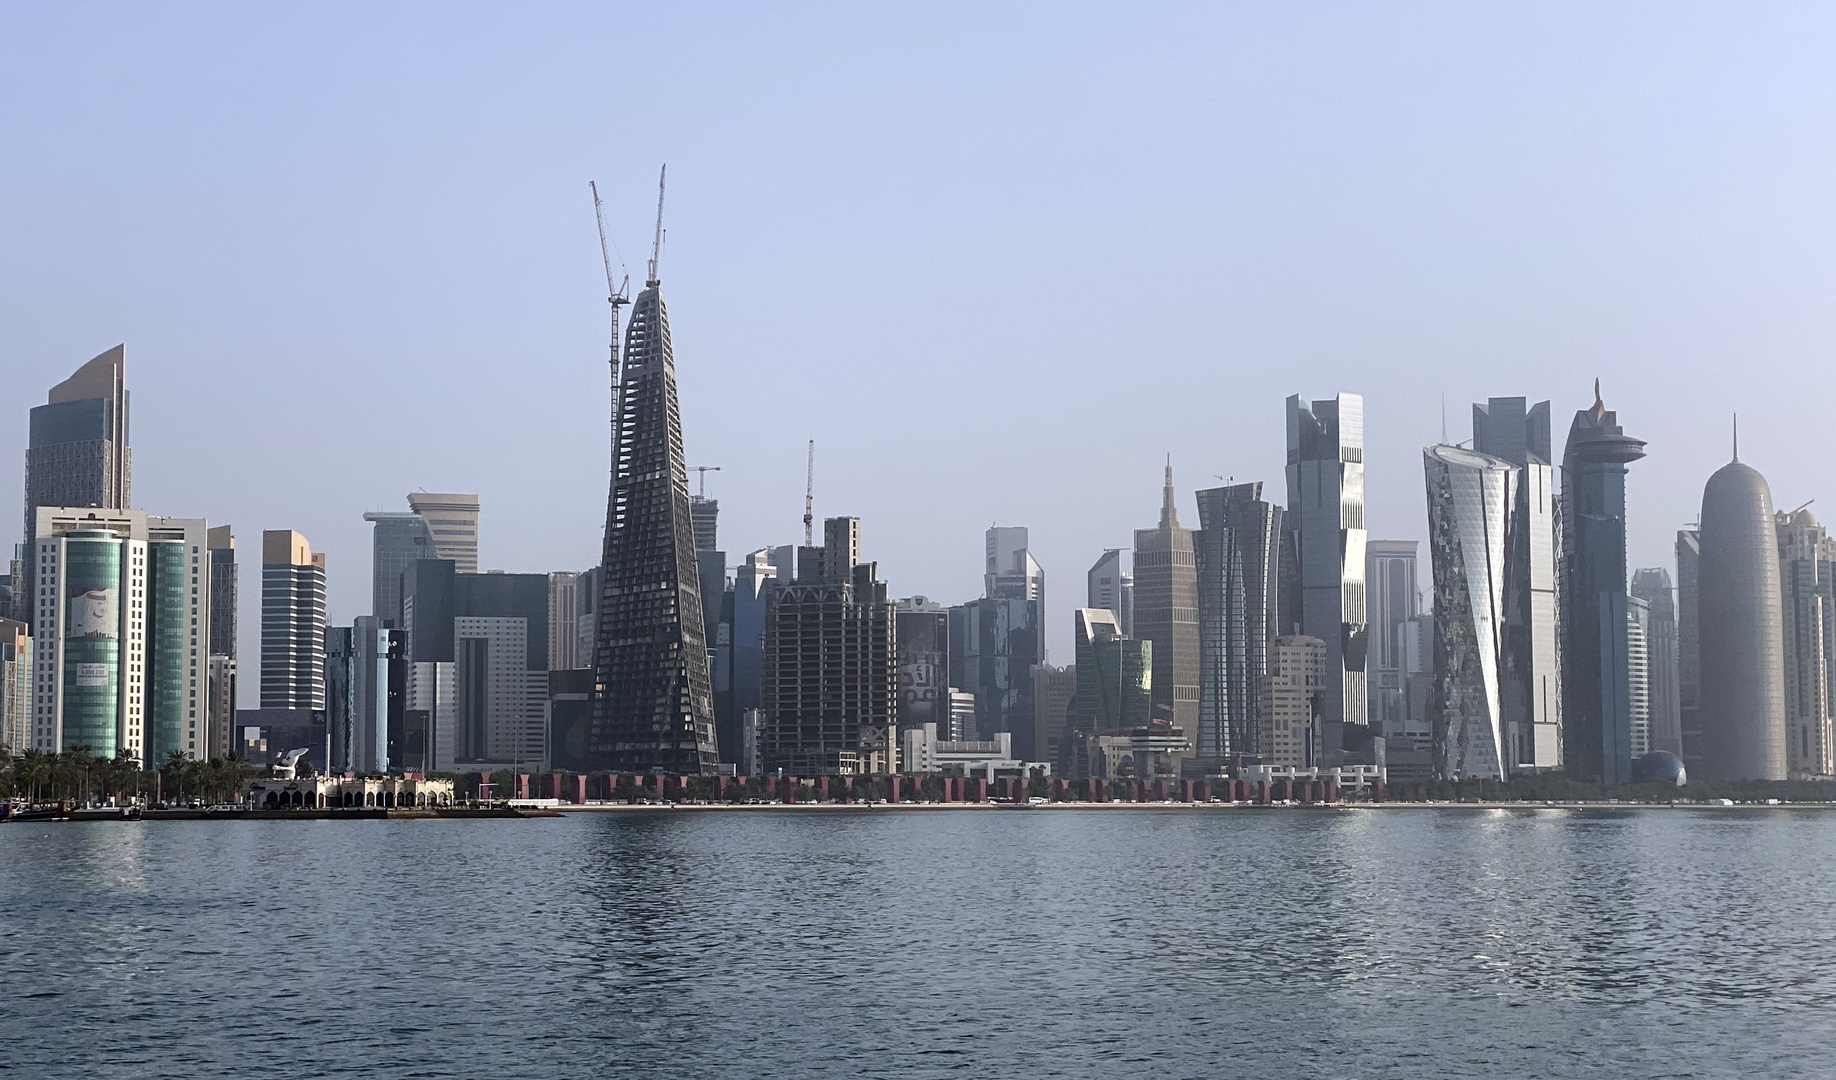 منتدى قطر الاقتصادي